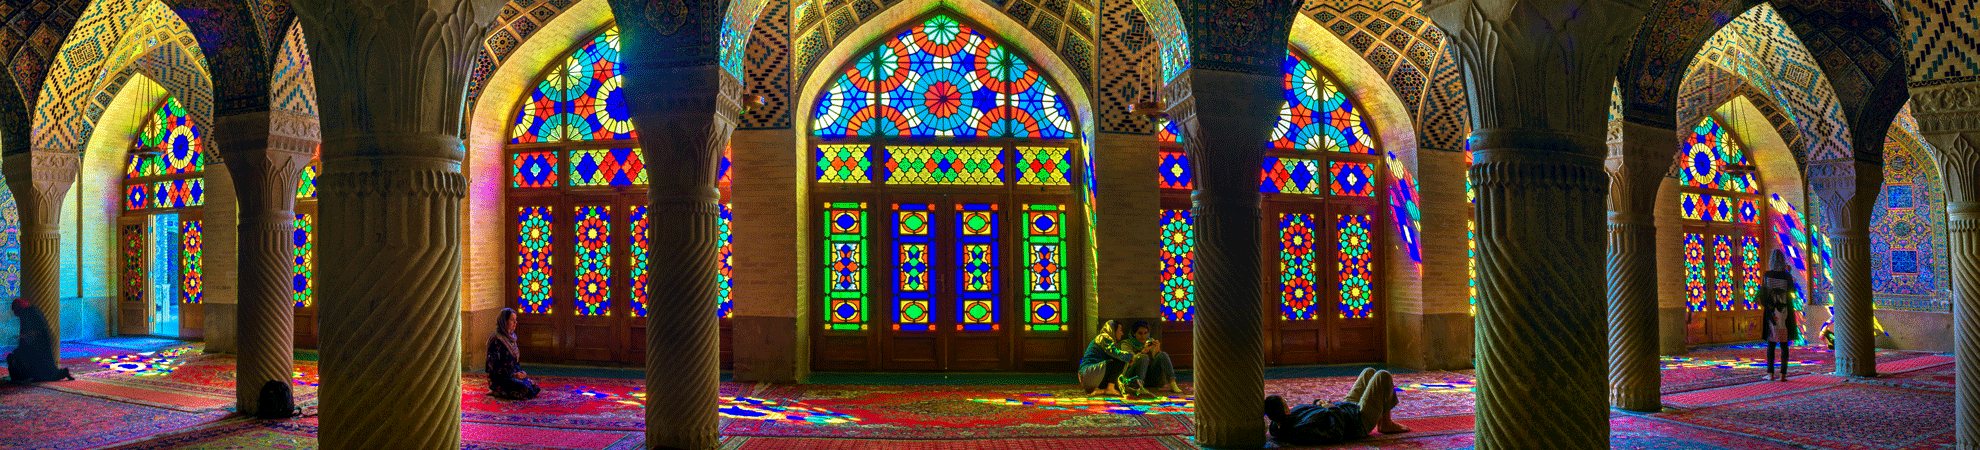 Iran tourisme